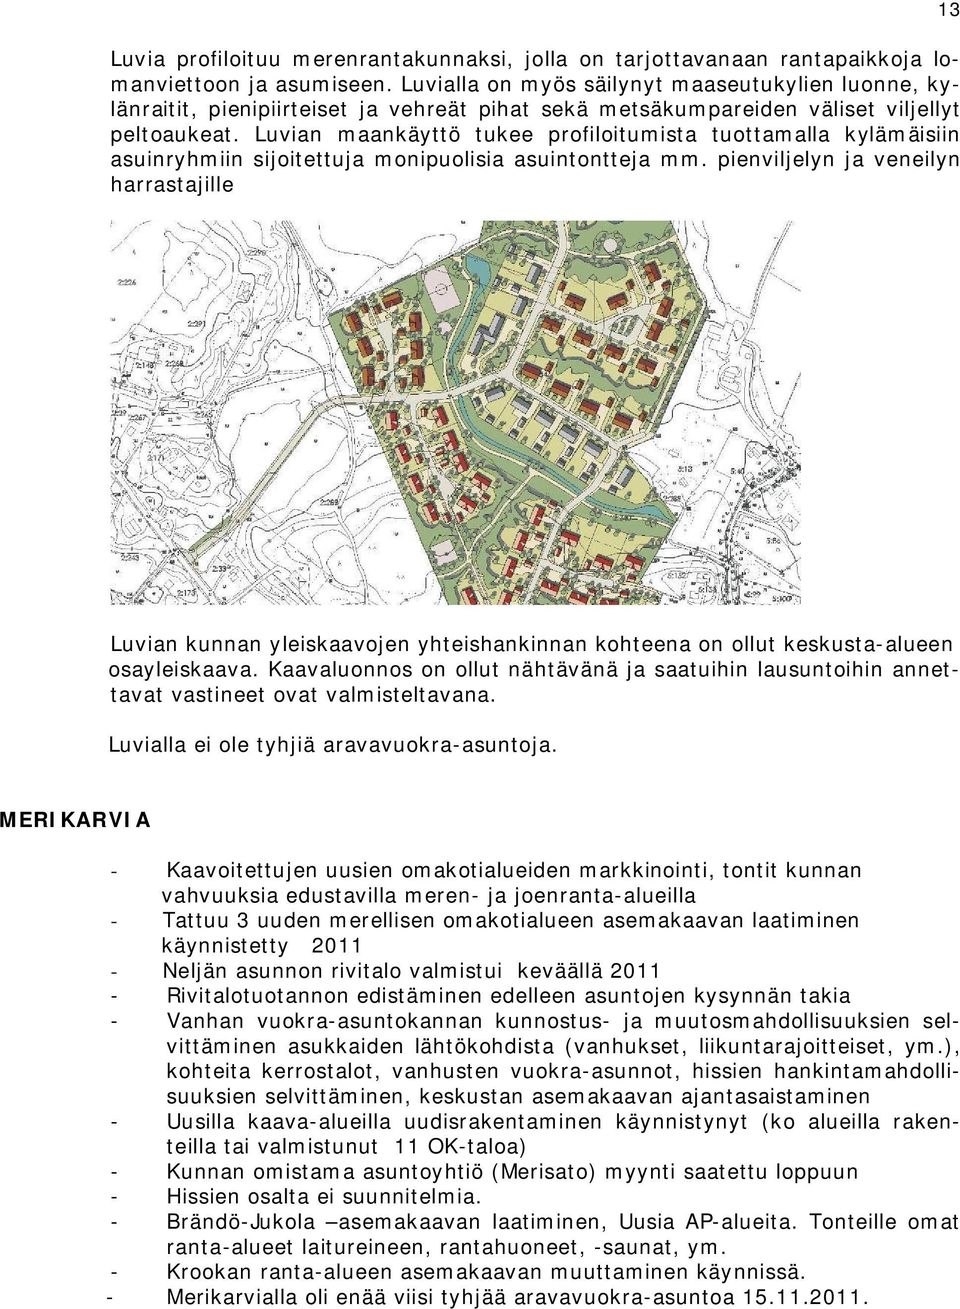 Luvian maankäyttö tukee profiloitumista tuottamalla kylämäisiin asuinryhmiin sijoitettuja monipuolisia asuintontteja mm.